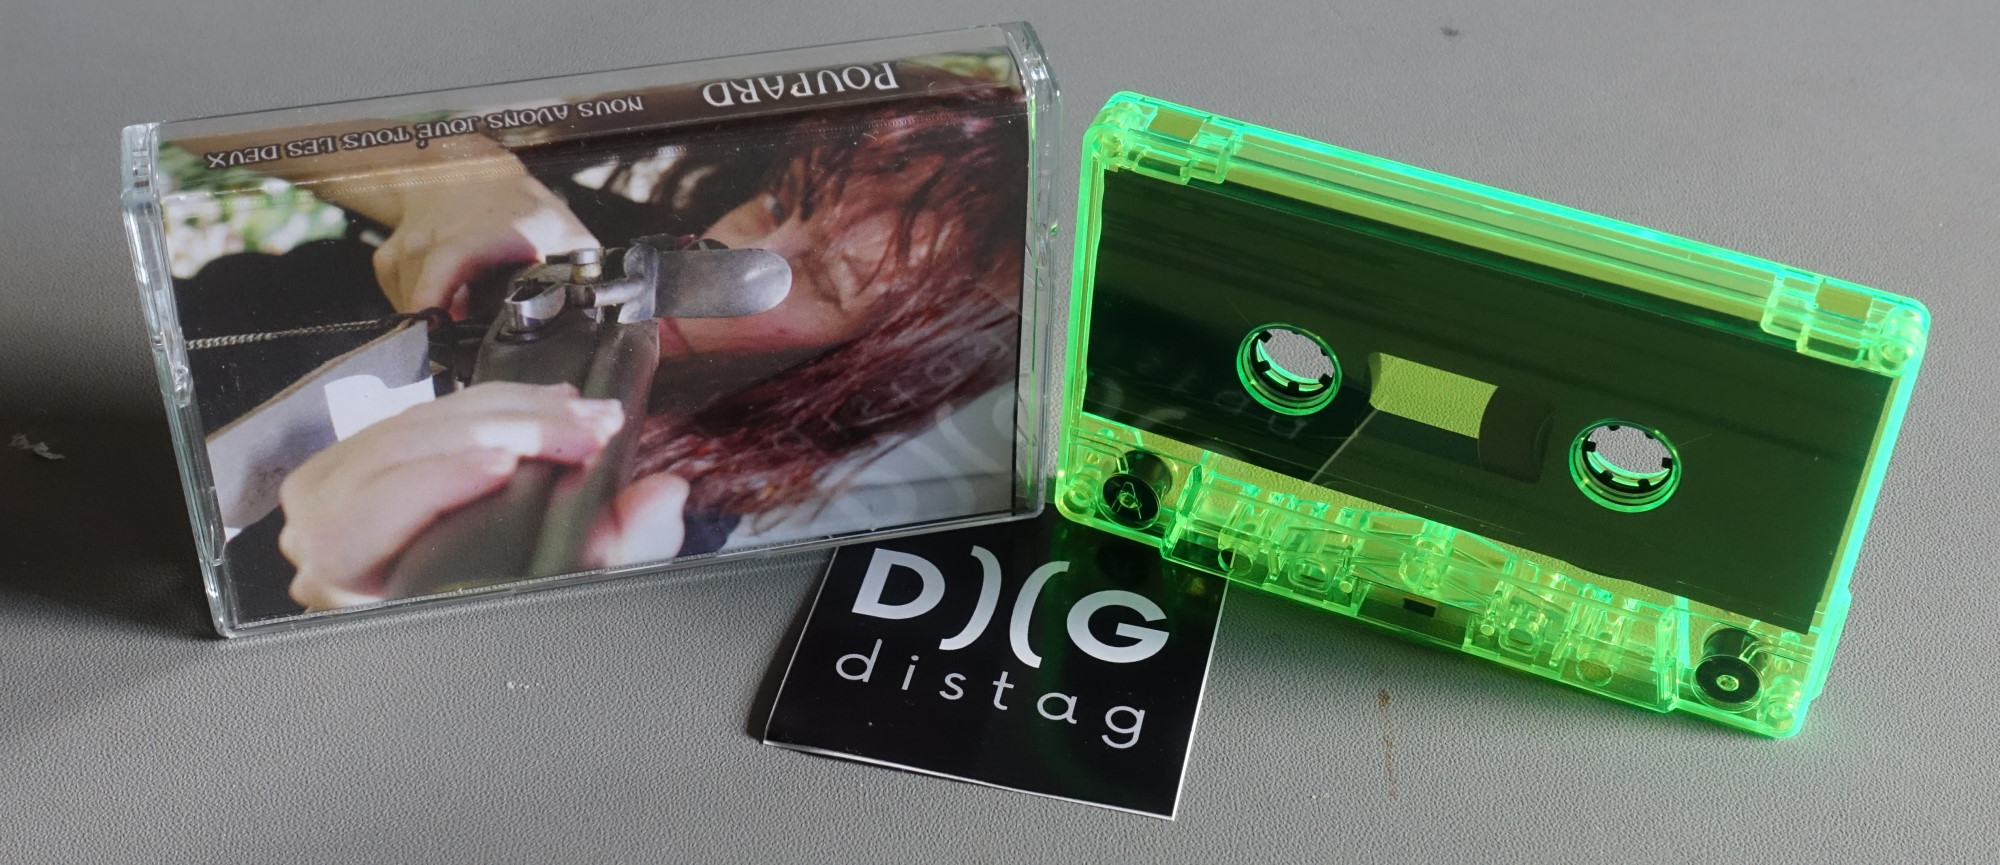 Poupard cassette